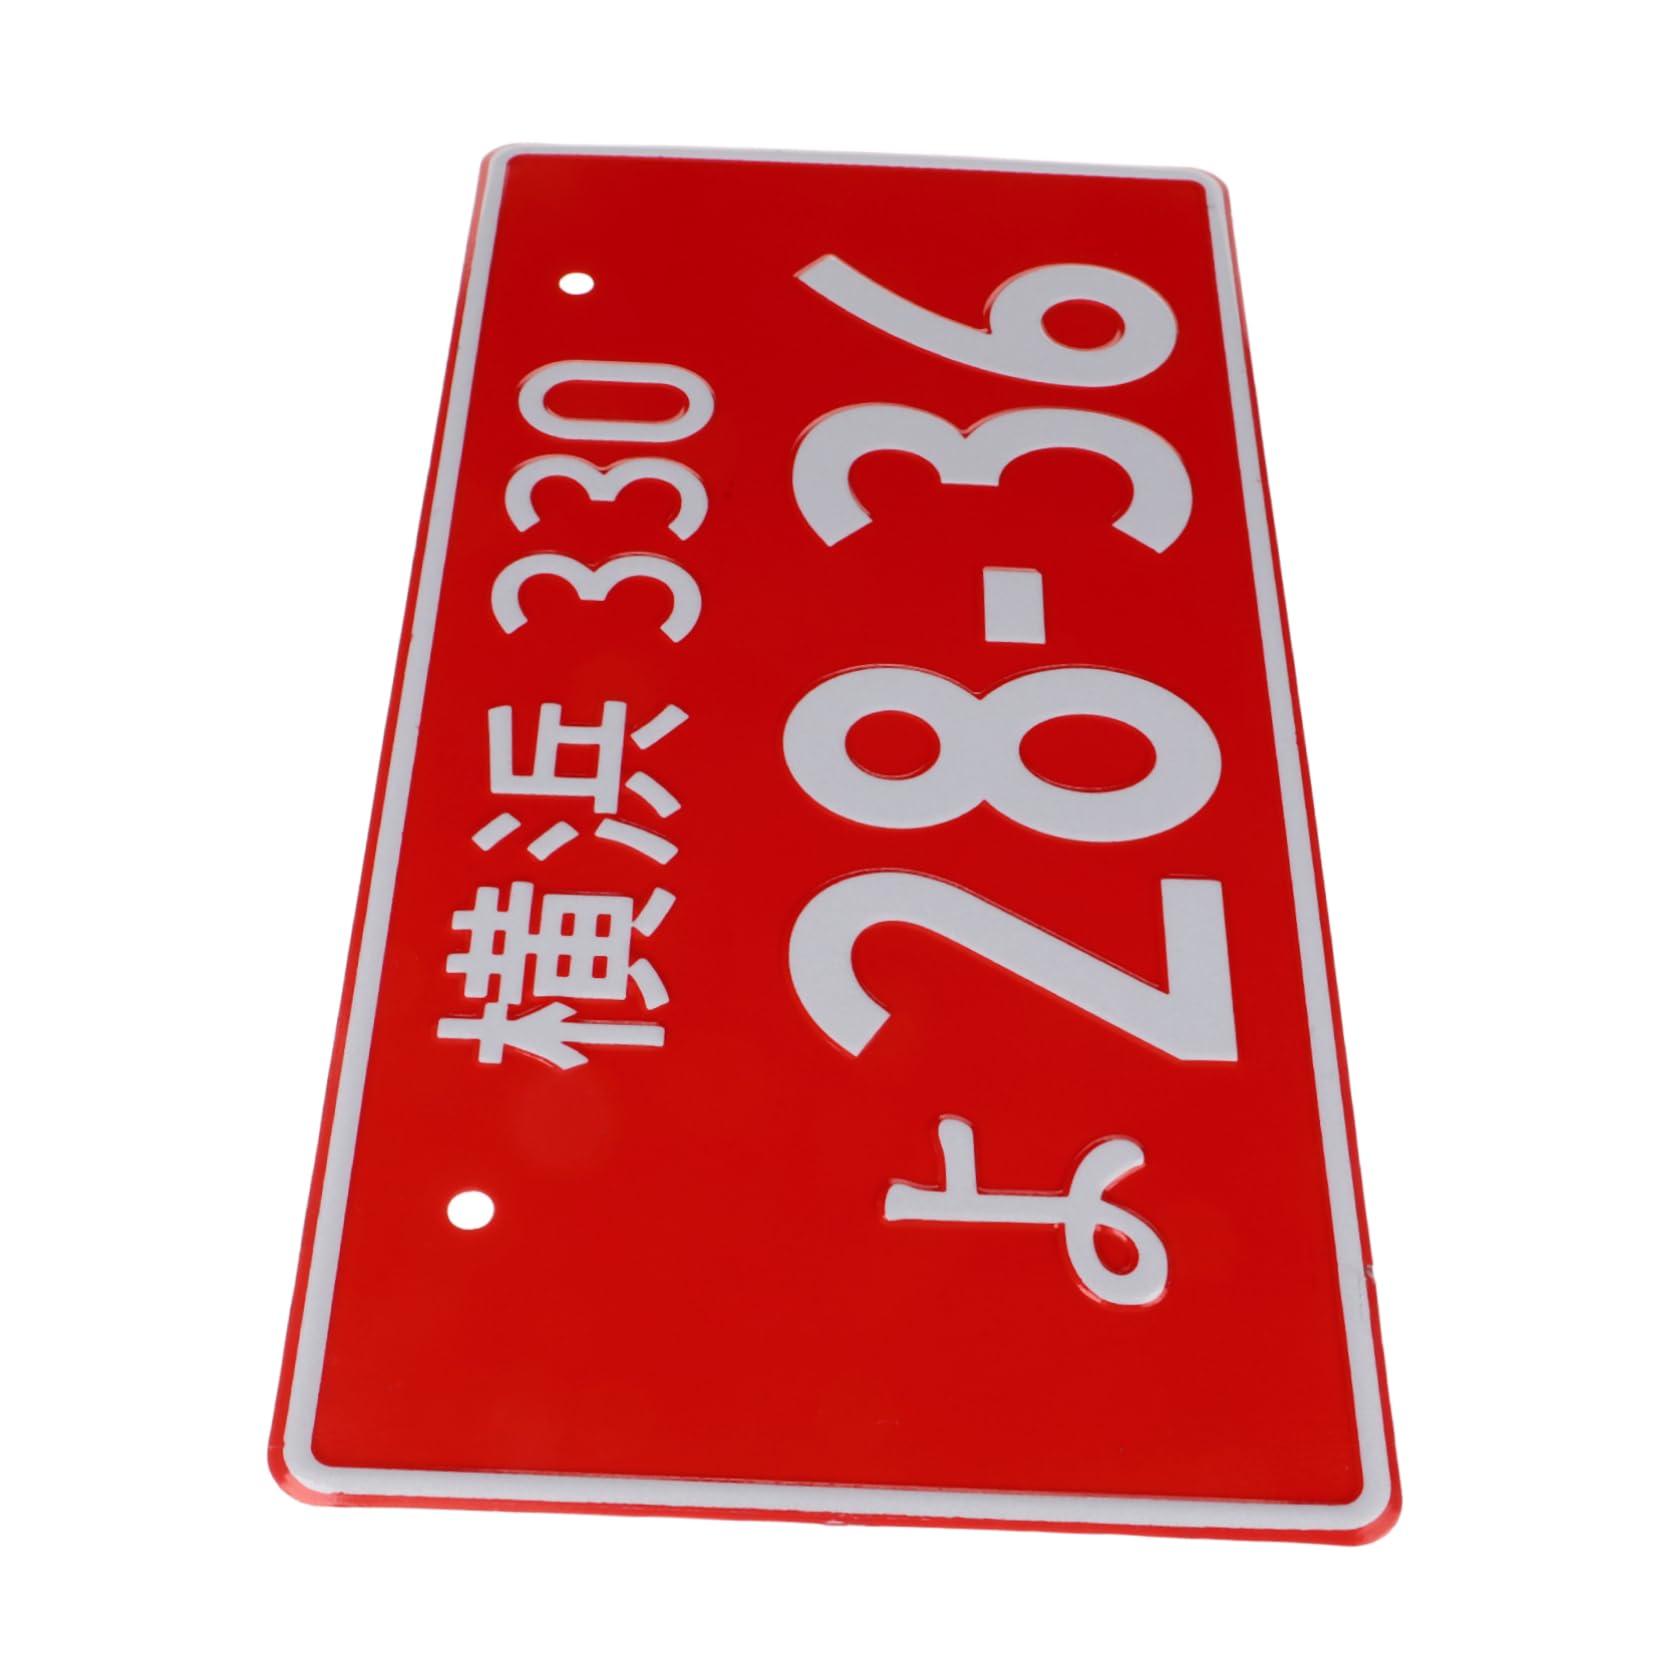 Anneome Nummernschilddekoration Nummernschild Für Auto Kfz-kennzeichenrahmen Auto Nummernschild Japanisches Auto-tag Japanisches Nummernschild Kennzeichenhalter Aluminiumlegierung Rot von Anneome